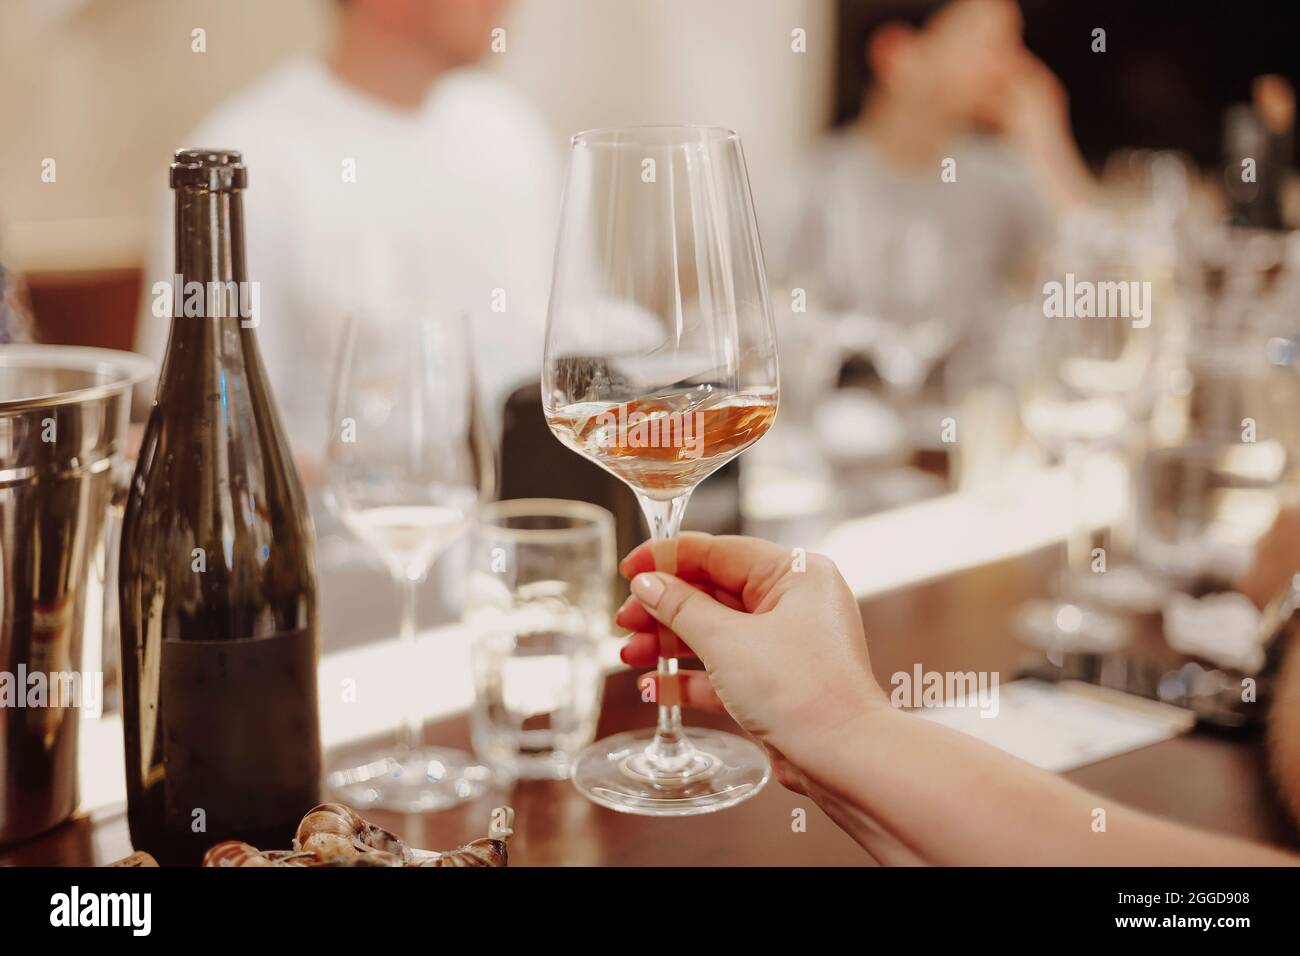 Bicchieri con diversi tipi di vino e mani umane che tengono i bicchieri da vino sullo sfondo. Degustazione di vini Foto Stock